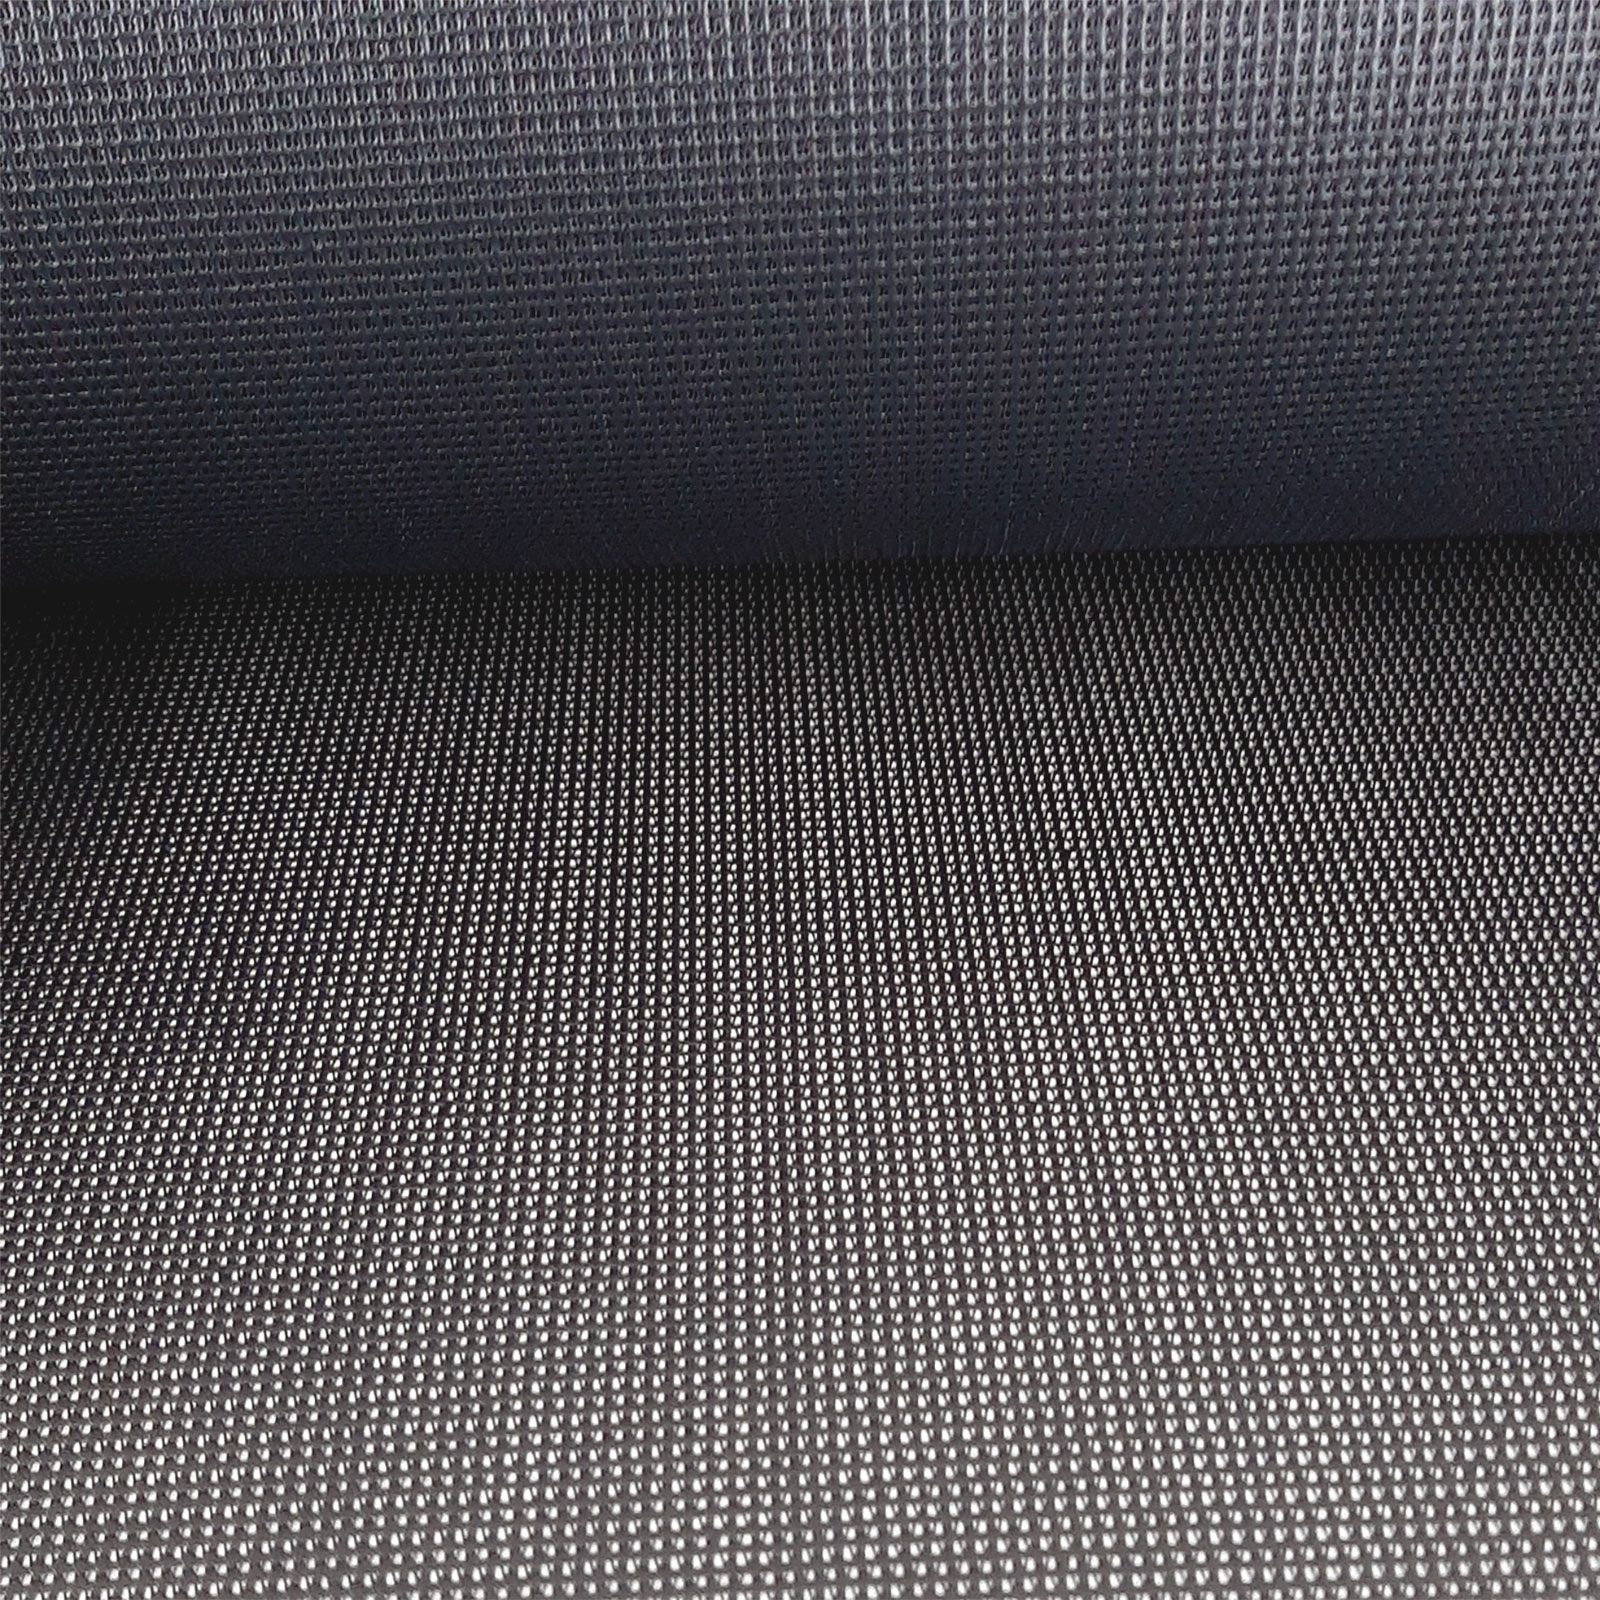 Stückverkauf Gittergewirke Seat Gard - Schwarz/Anthrazit - 0,55m x 2,05m